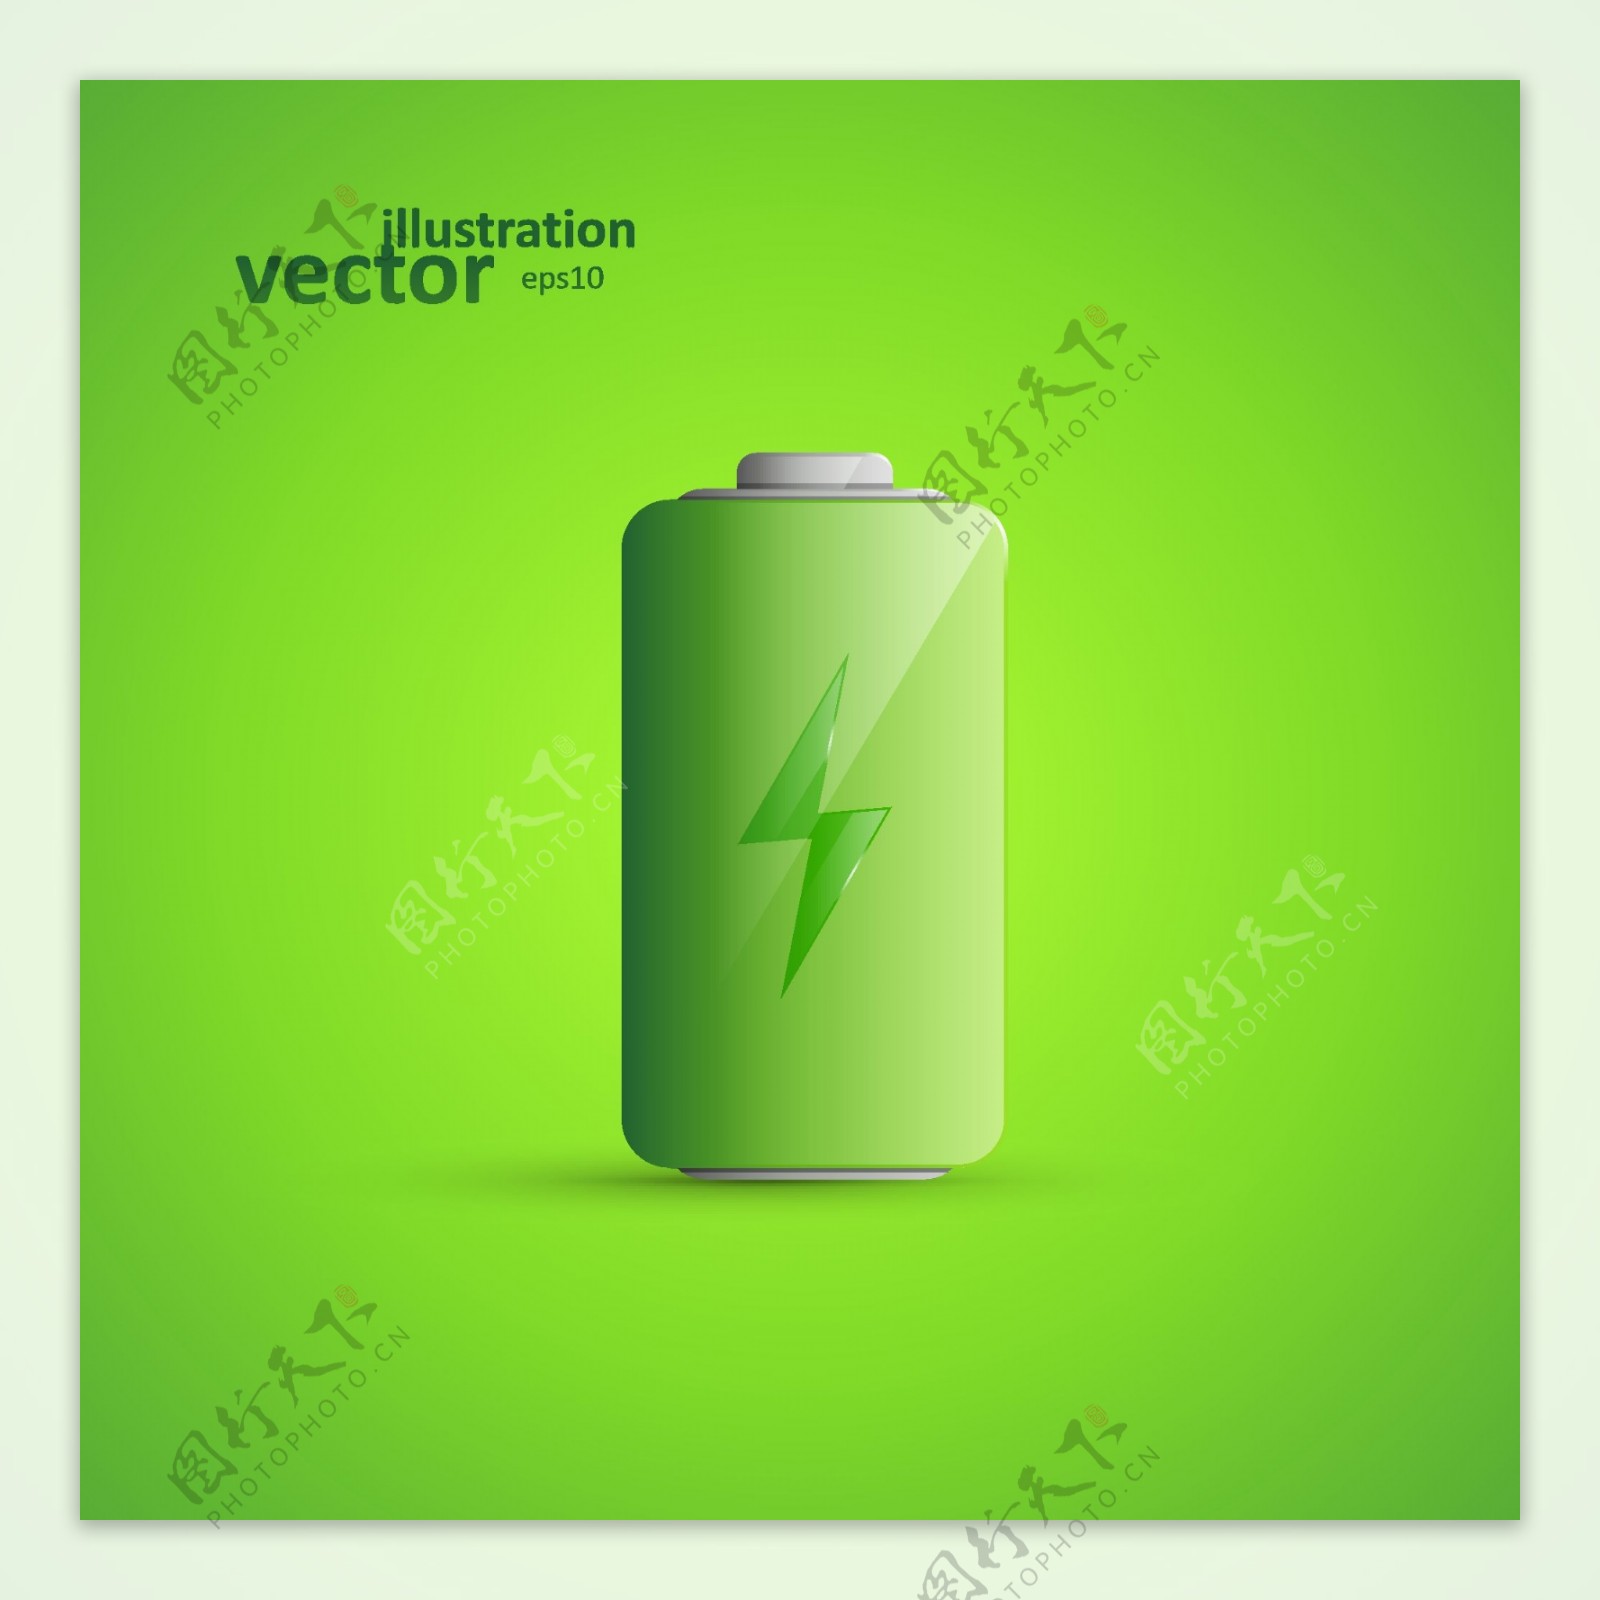 绿色电池背景矢量素材下载